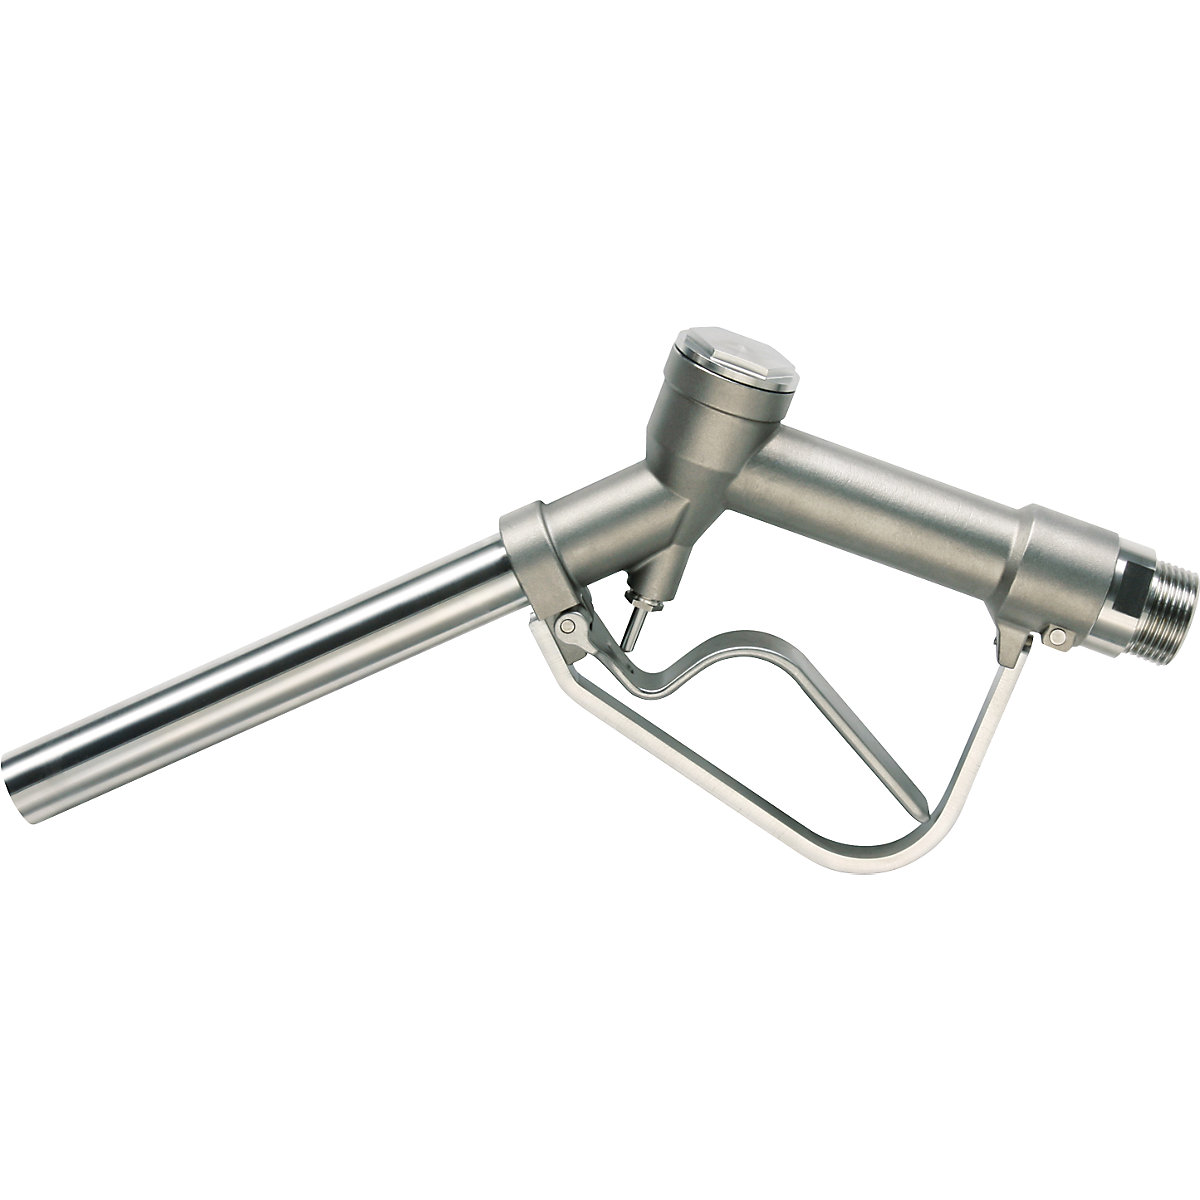 Pistola de distribuição manual em aço inoxidável 1.4571 - Jessberger